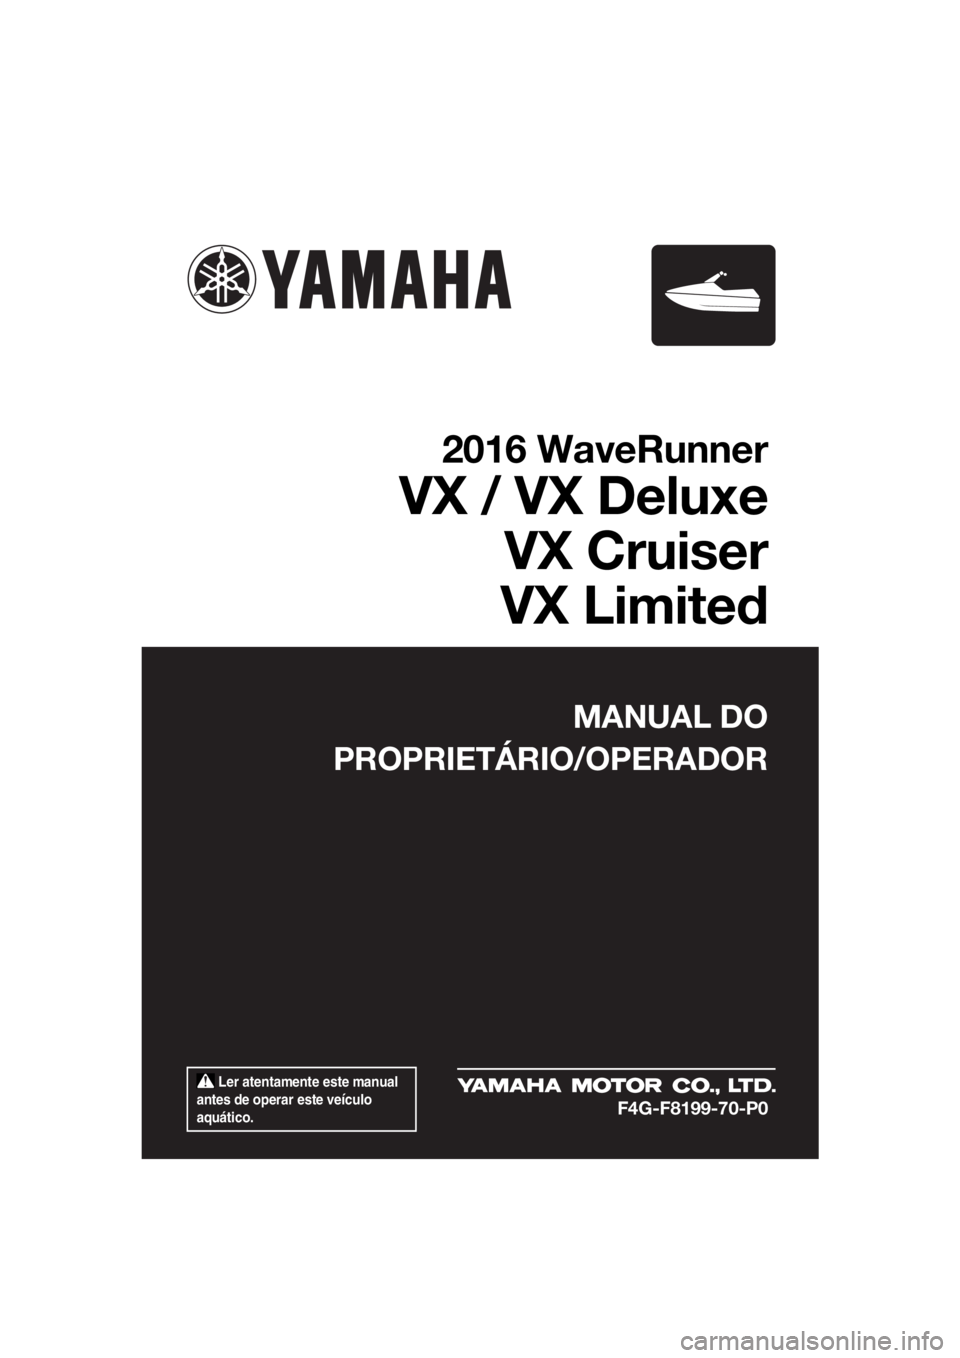 YAMAHA VX LIMITED 2016  Manual de utilização (in Portuguese)  Ler atentamente este manual 
antes de operar este veículo 
aquático.
MANUAL DO
PROPRIETÁRIO/OPERADOR
2016 WaveRunner
VX / VX Deluxe
VX Cruiser
VX Limited
F4G-F8199-70-P0
UF4G70P0.book  Page 1  Mon